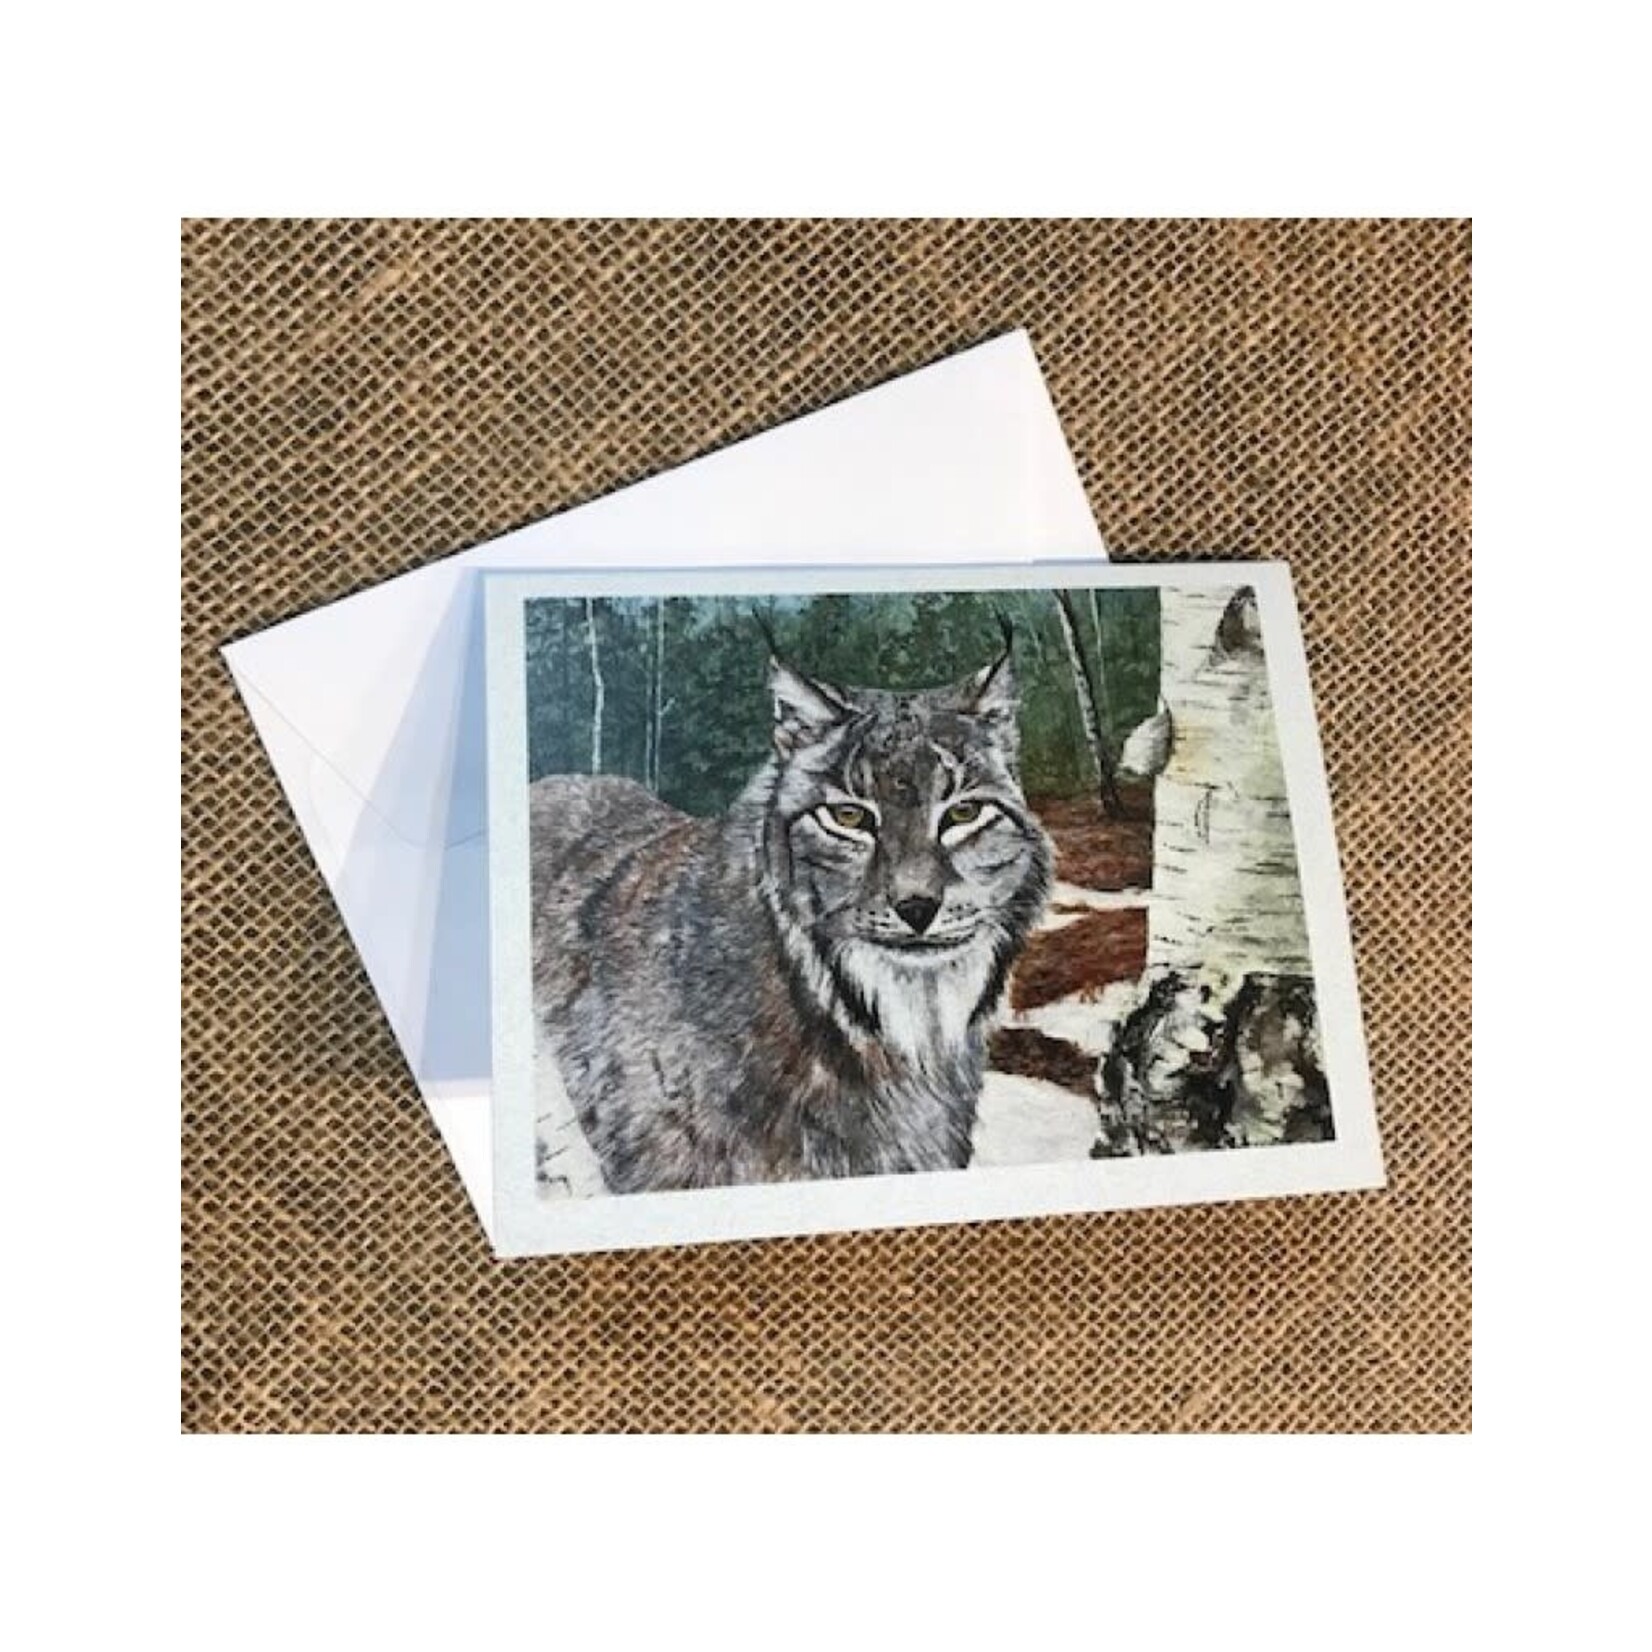 Ron Wetzel Card 4.5''x6''- Lynx